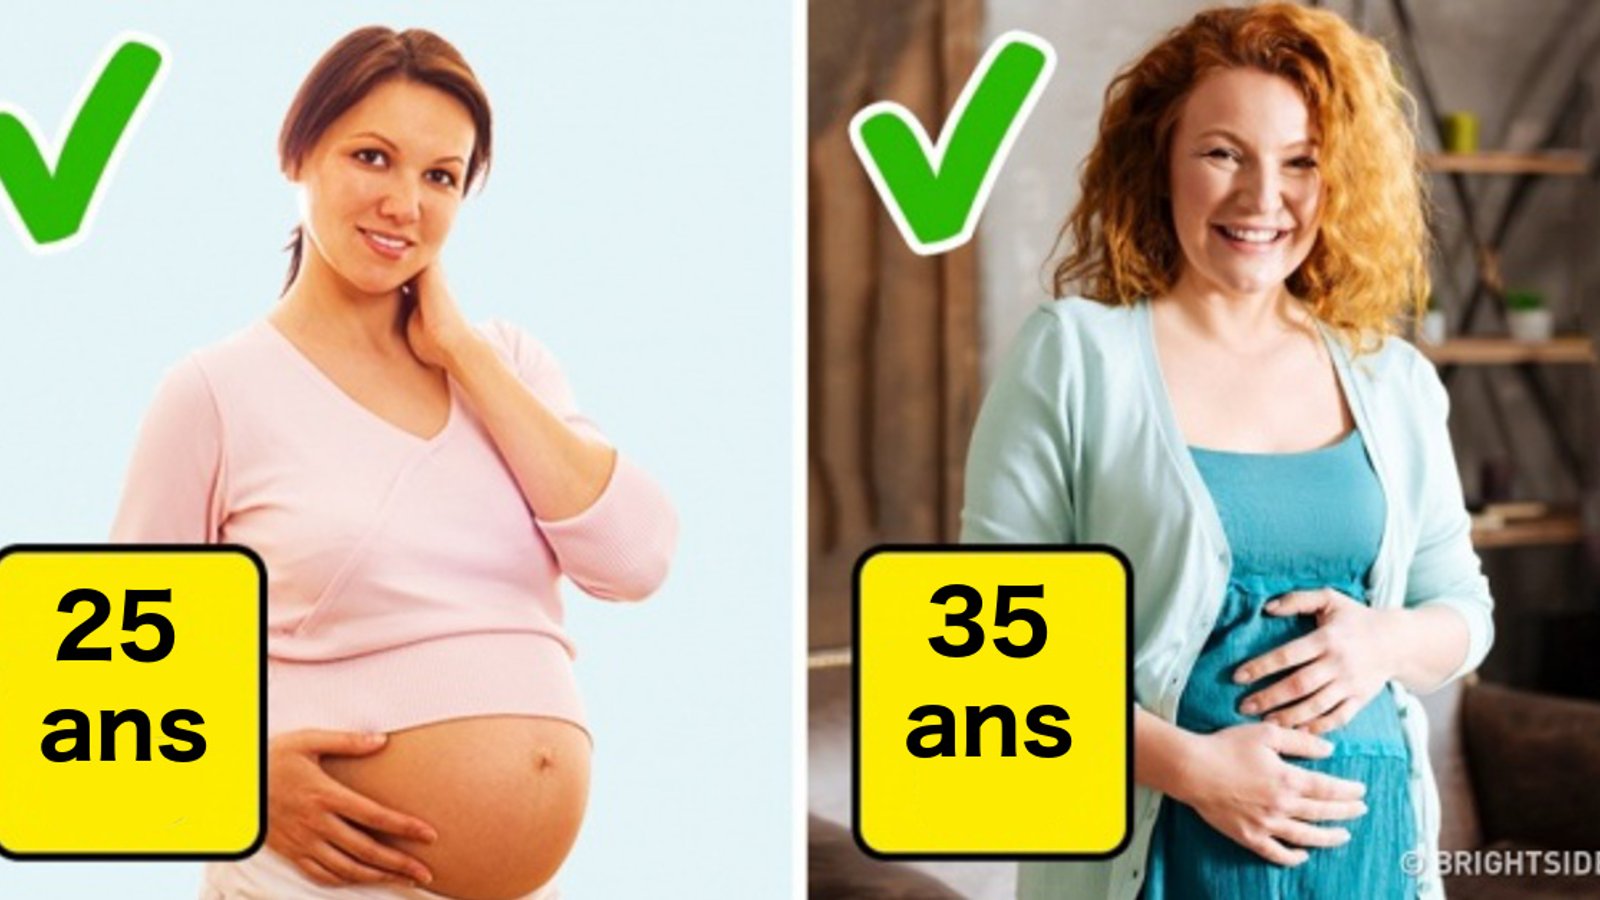 12 mythes sur la grossesse qui persistent encore aujourd'hui